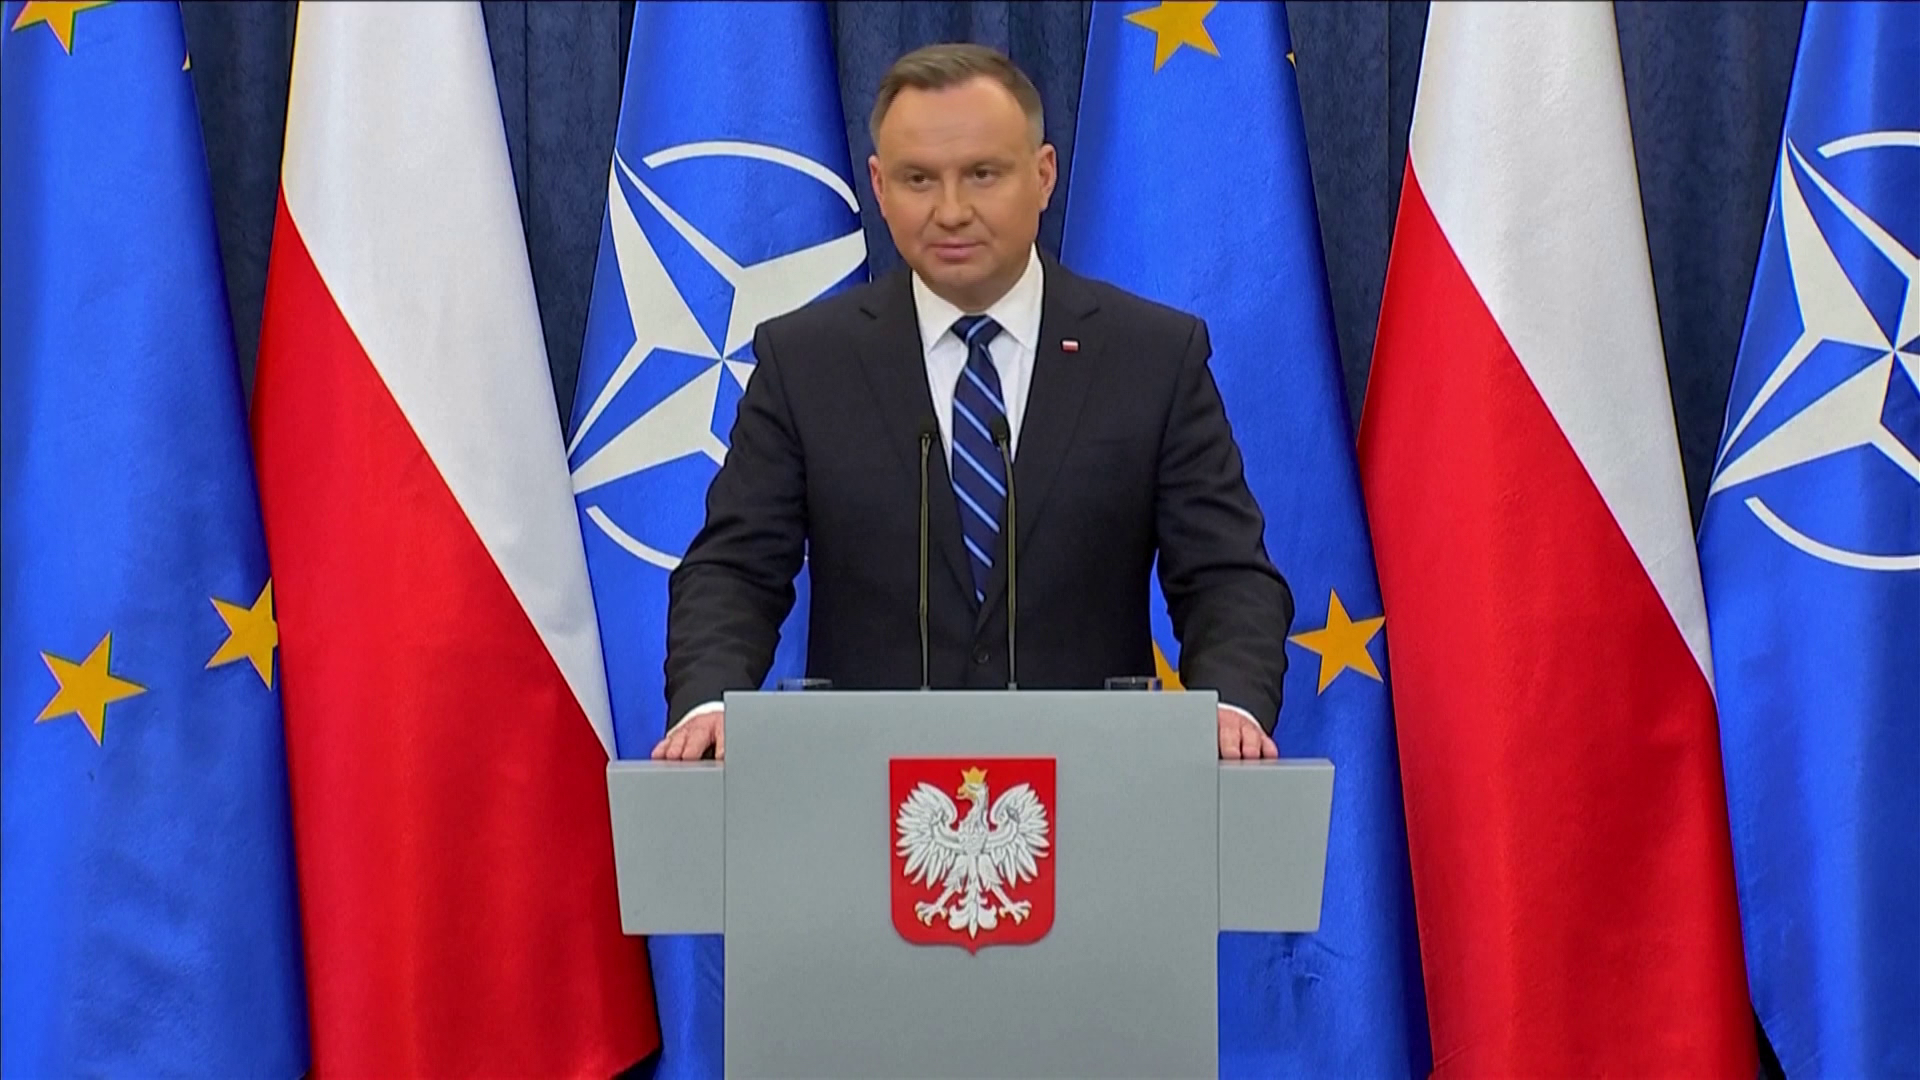 Andrzej Duda: Lengyelország kész atomfegyvert fogadni a területén, amennyiben a NATO úgy dönt